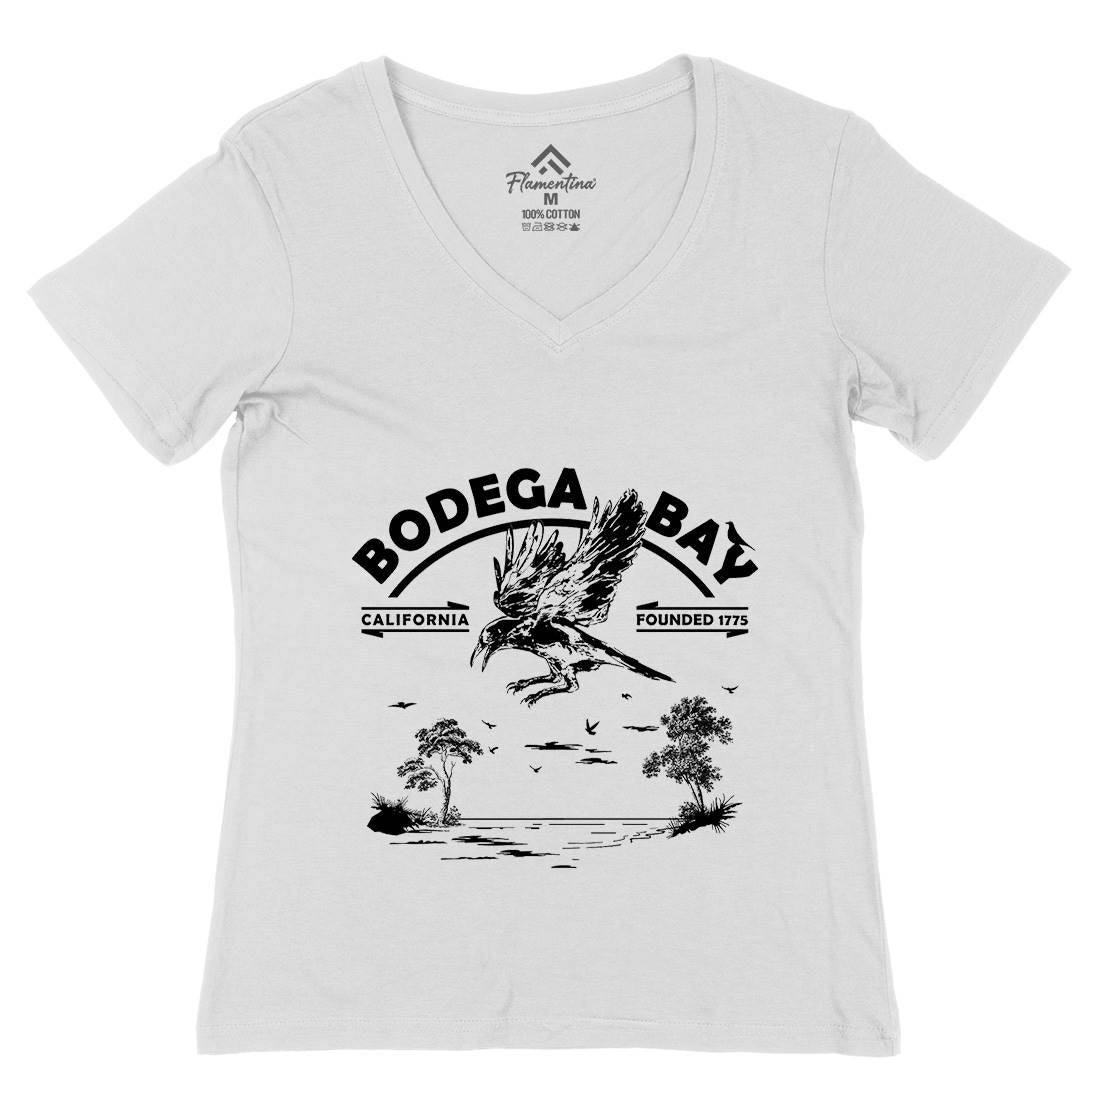 Bodega Bay Womens Organic V-Neck T-Shirt Horror D310